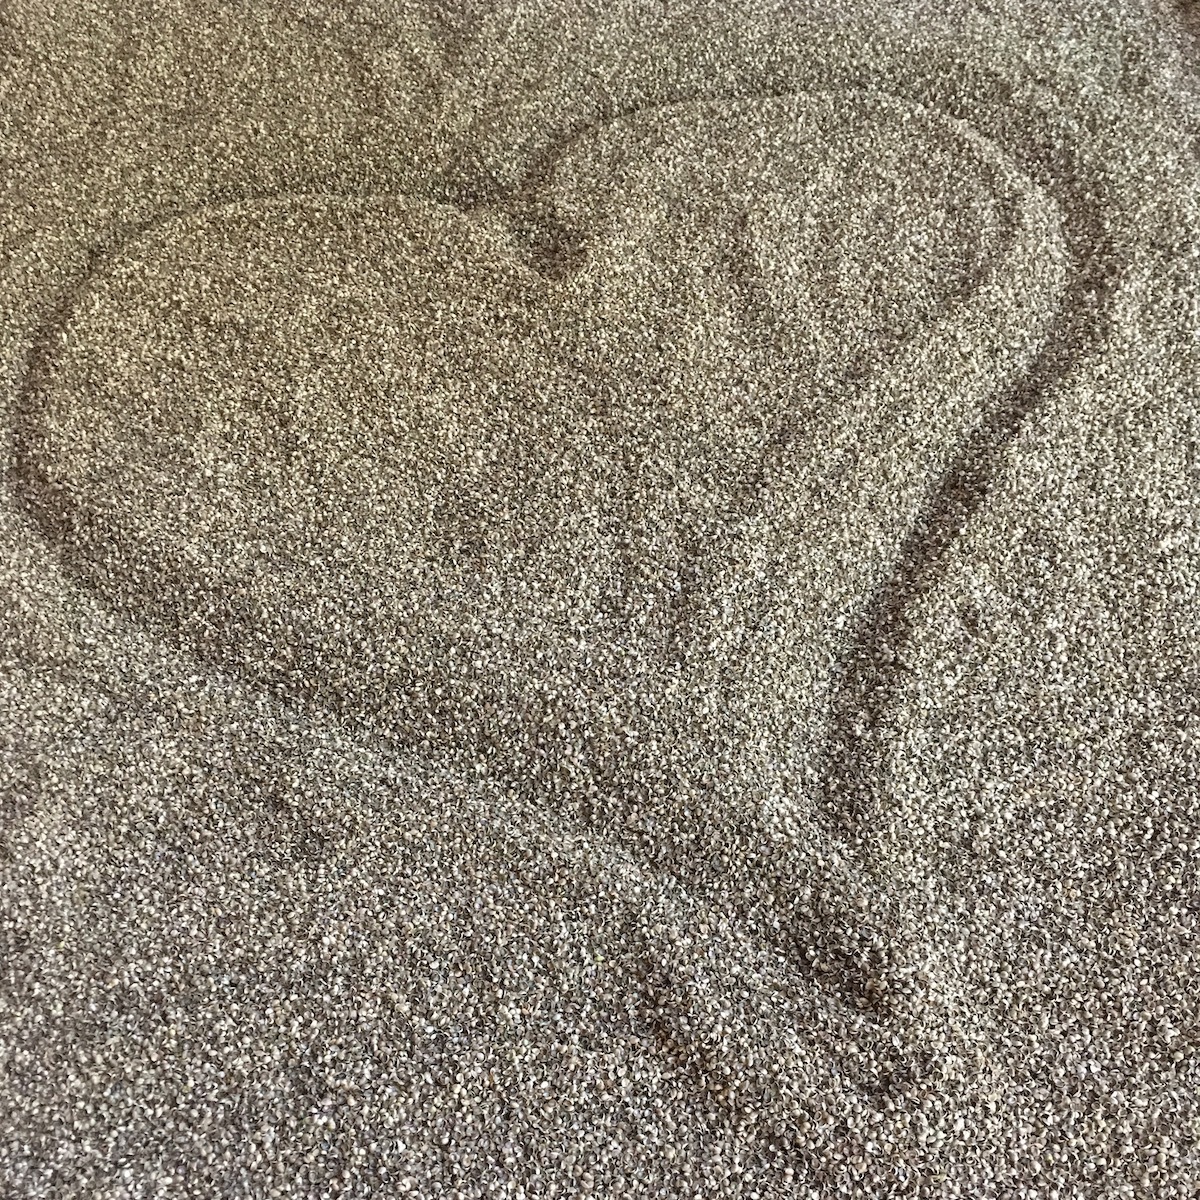 sand_mattress.jpg